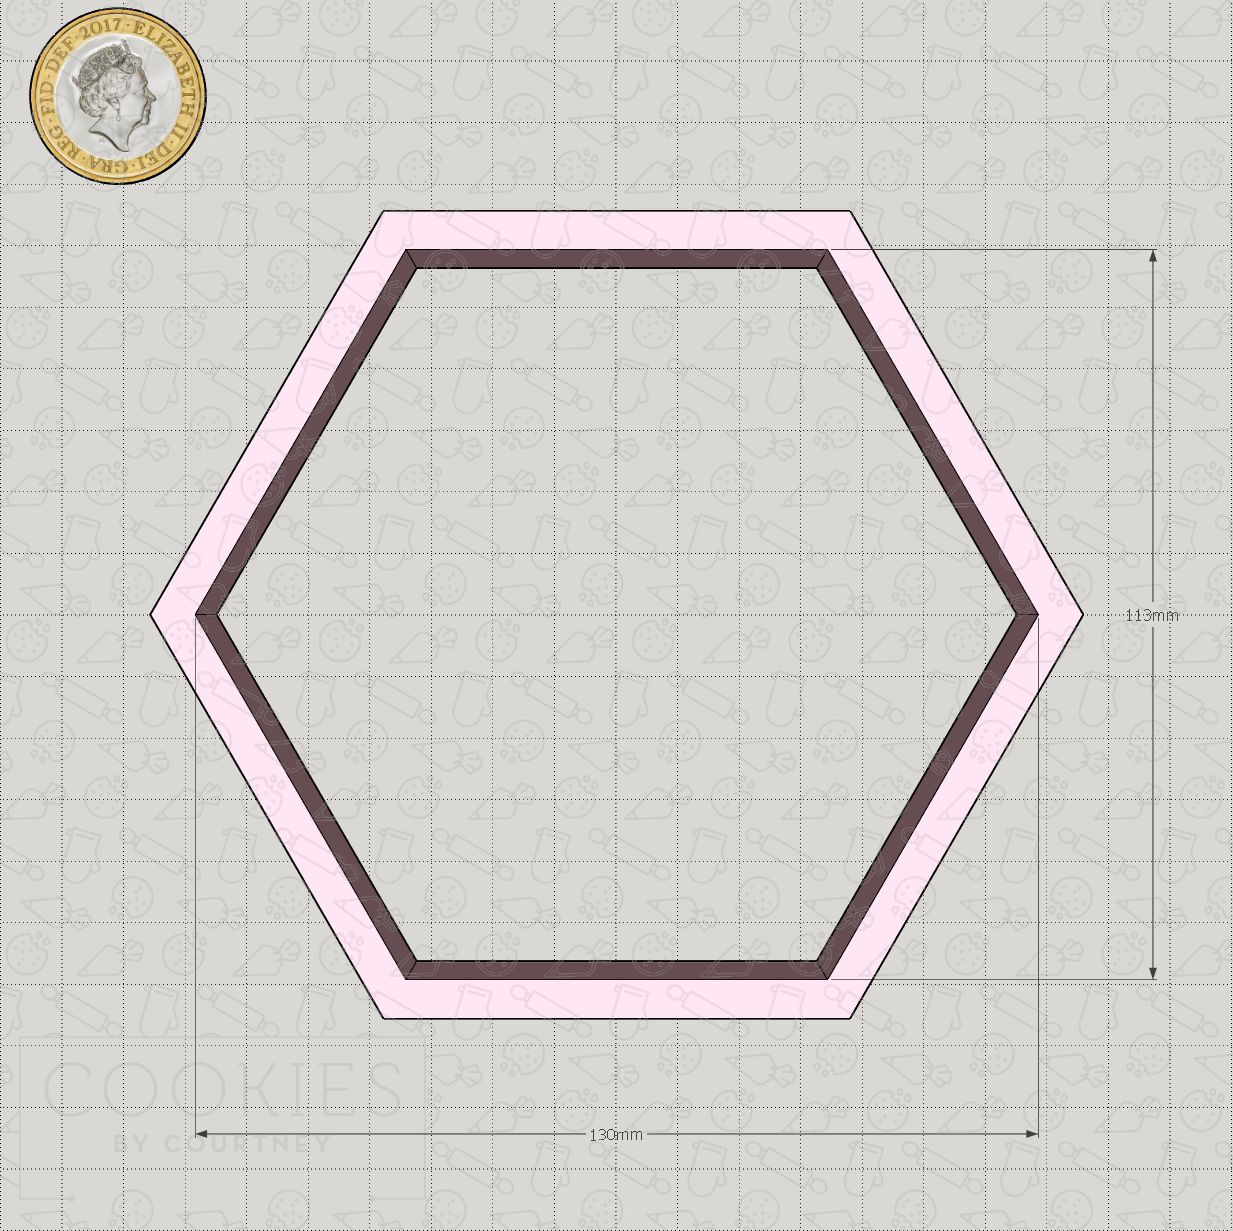 Hexagon Cookie Cutter